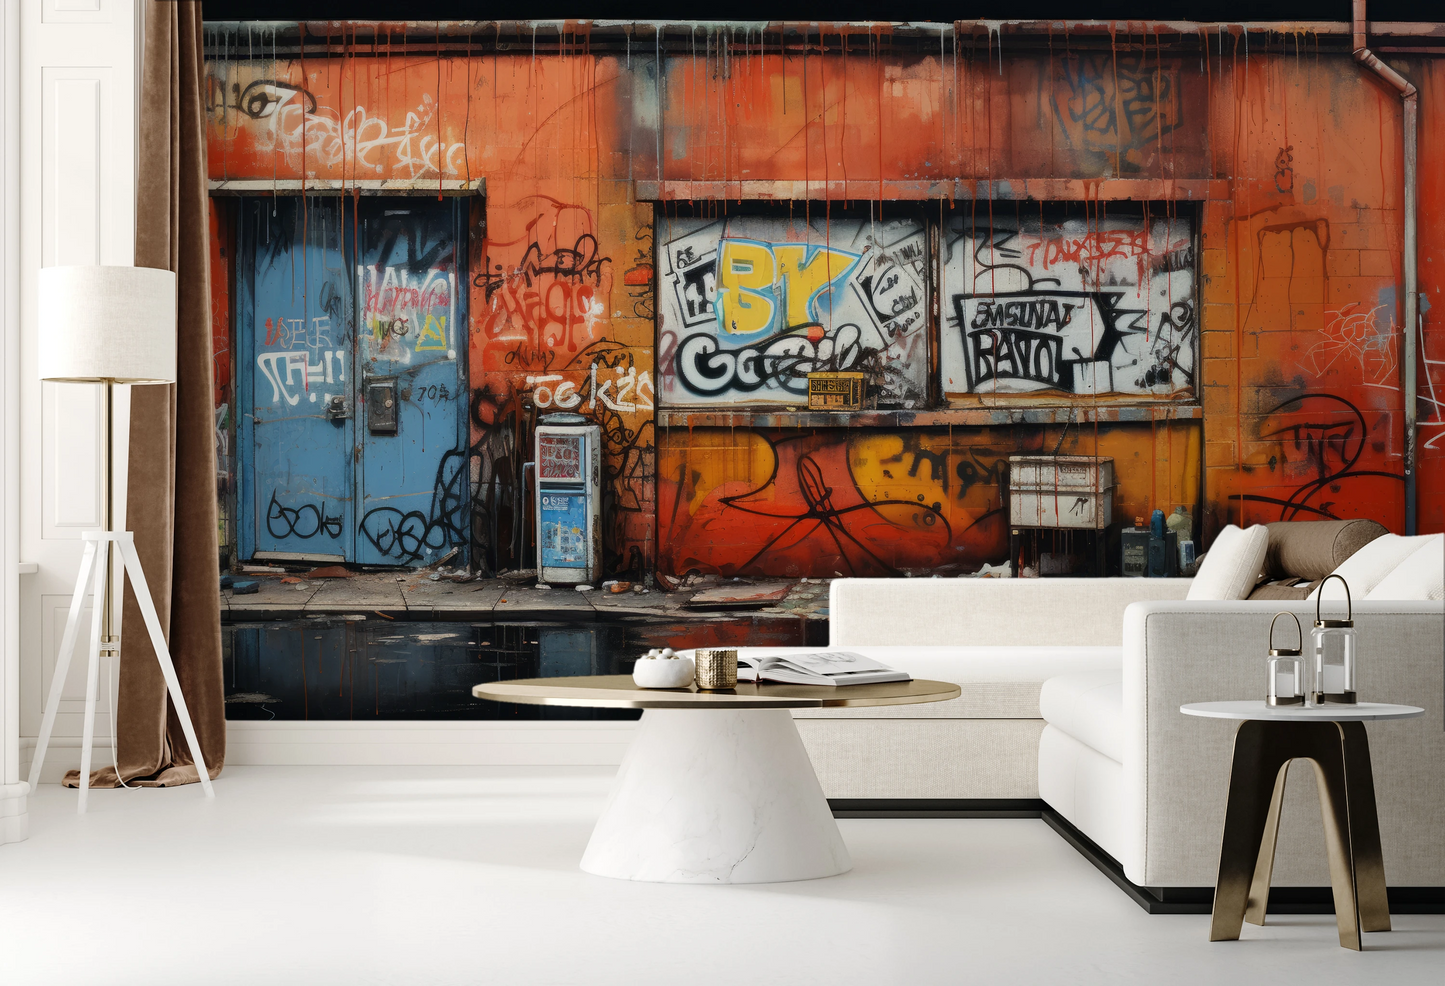 Zdjęcie prezentuje aranżację wnętrza z użyciem fototapety o nazwie Graffiti Panorama pokazanej w aranżacji wnętrza.